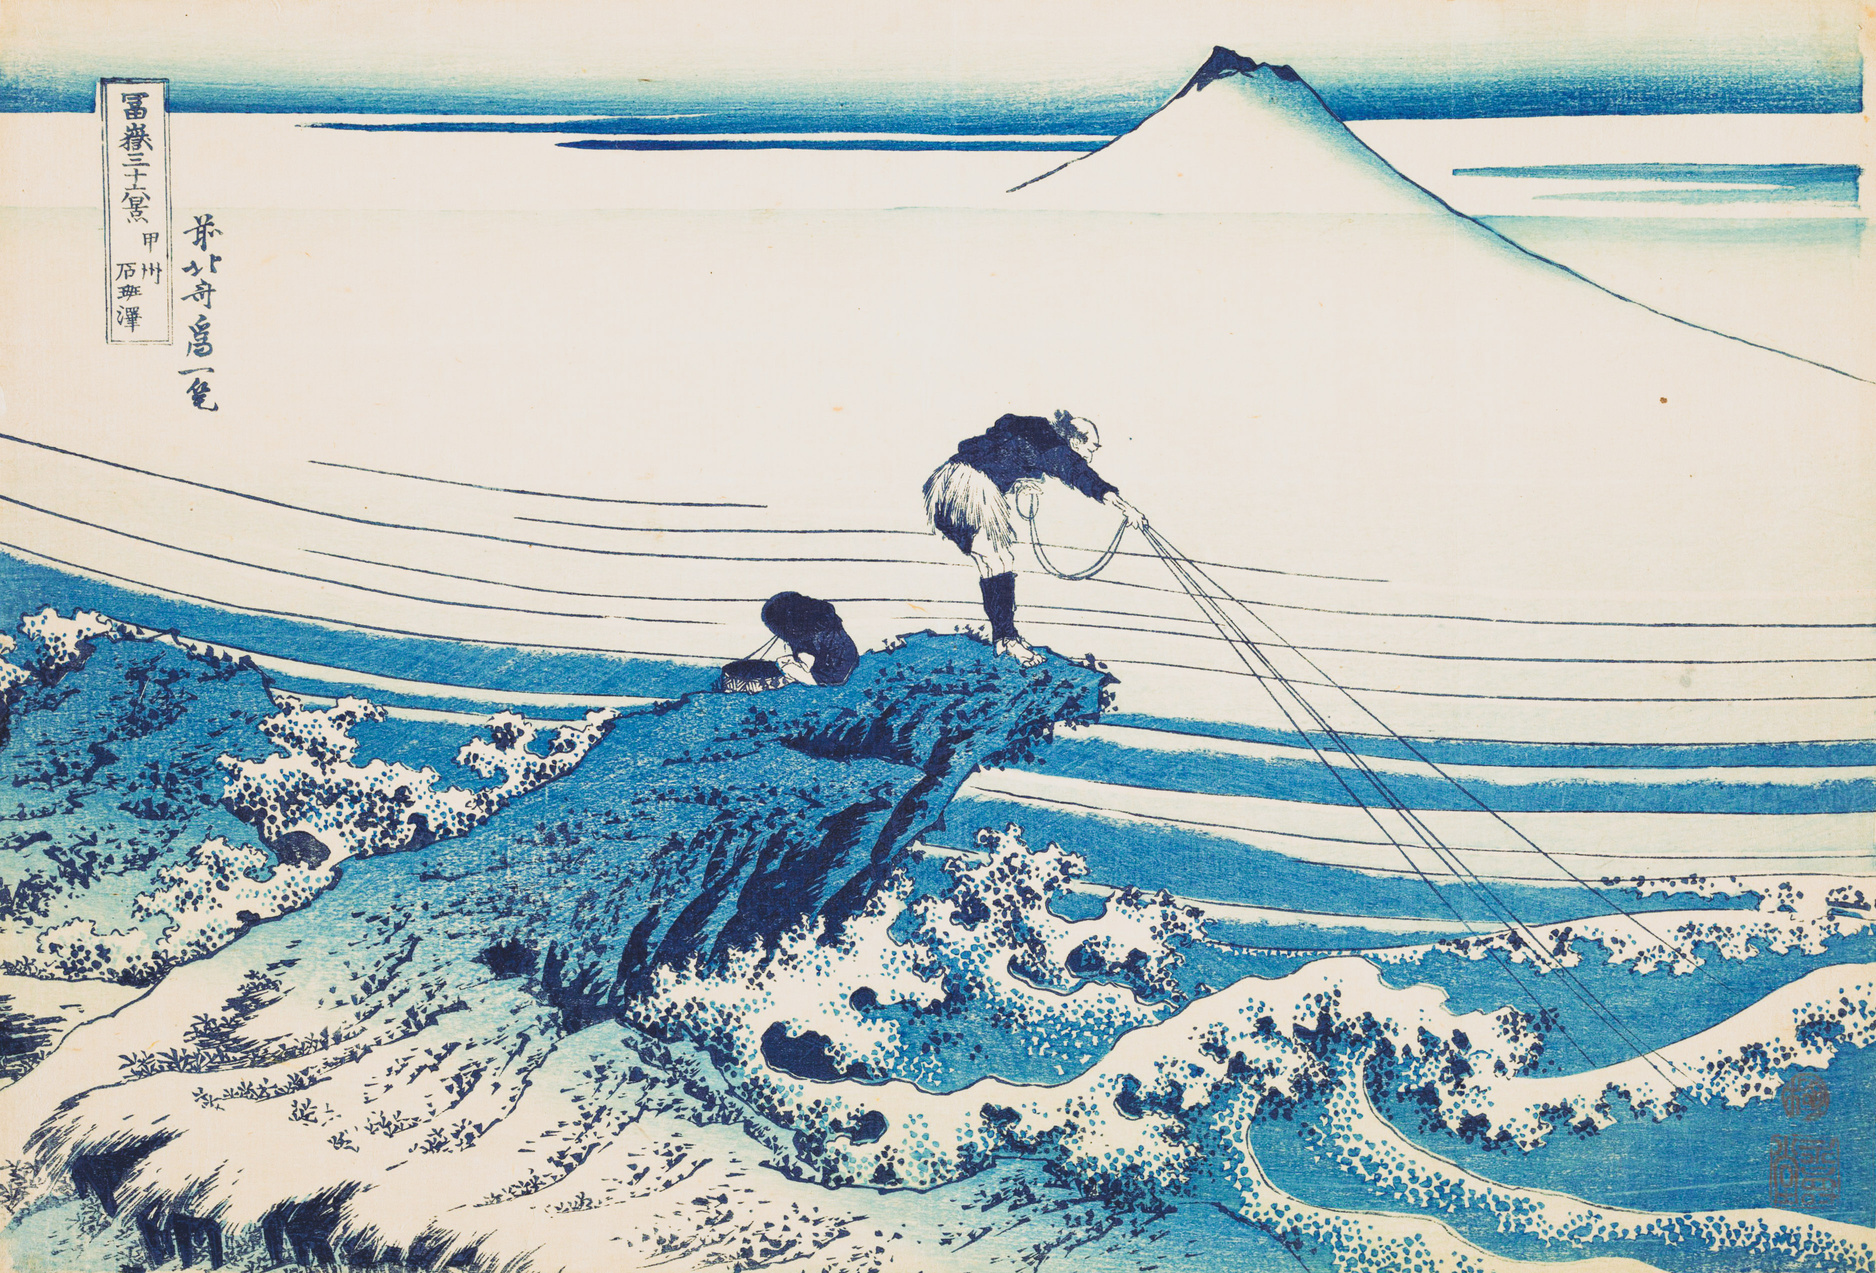 Kajikazawa in Kai Province (Koshu Kajikazawa) by Katsushika Hokusai, ca. 1830-32. Courtesy of The Metropolitan Museum.